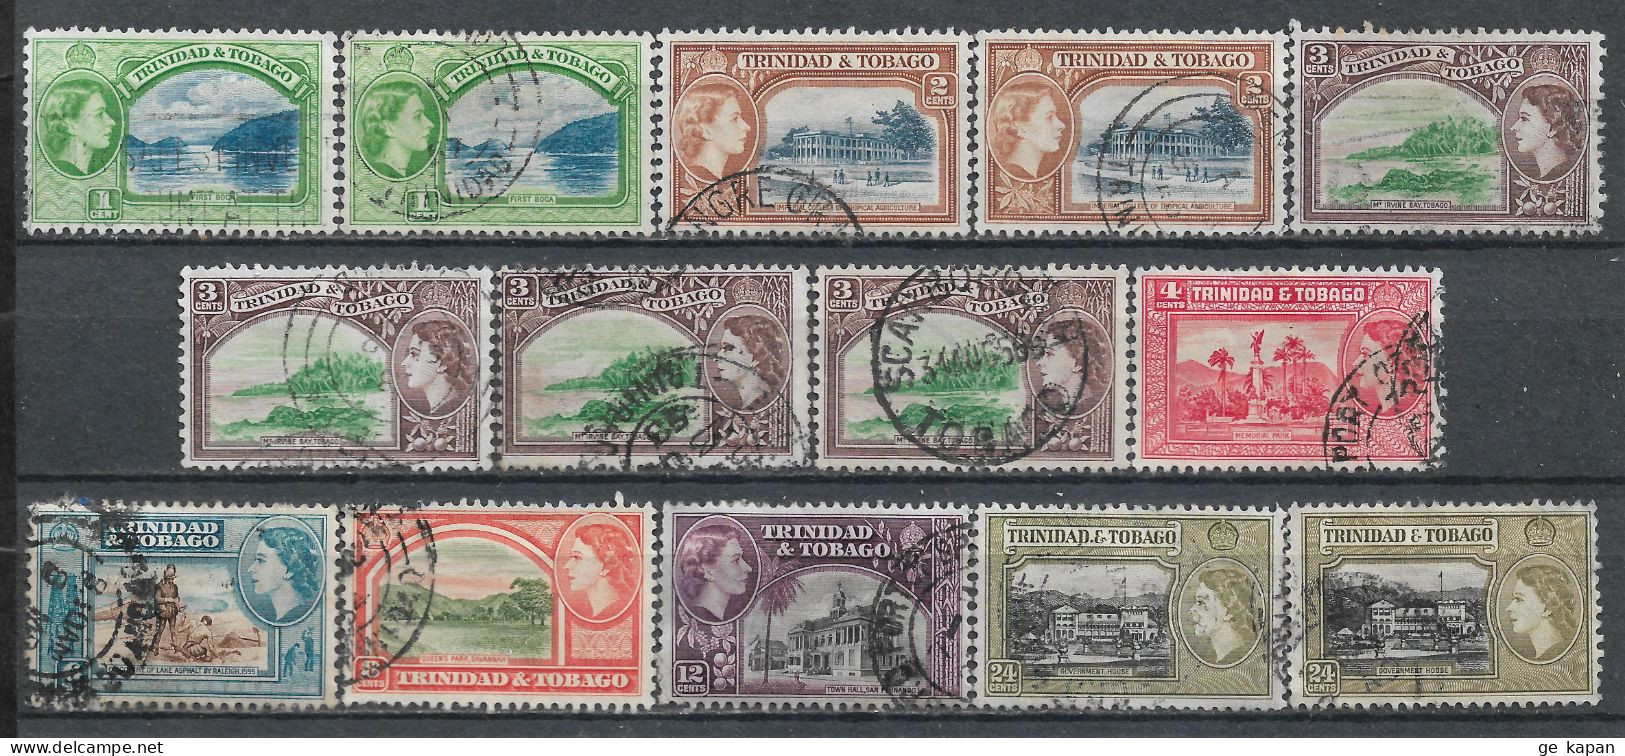 1953 TRINIDAD & TOBAGO SET OF 14 USED STAMPS (Michel # 155-158,160-163) CV €4.20 - Trinidad Y Tobago